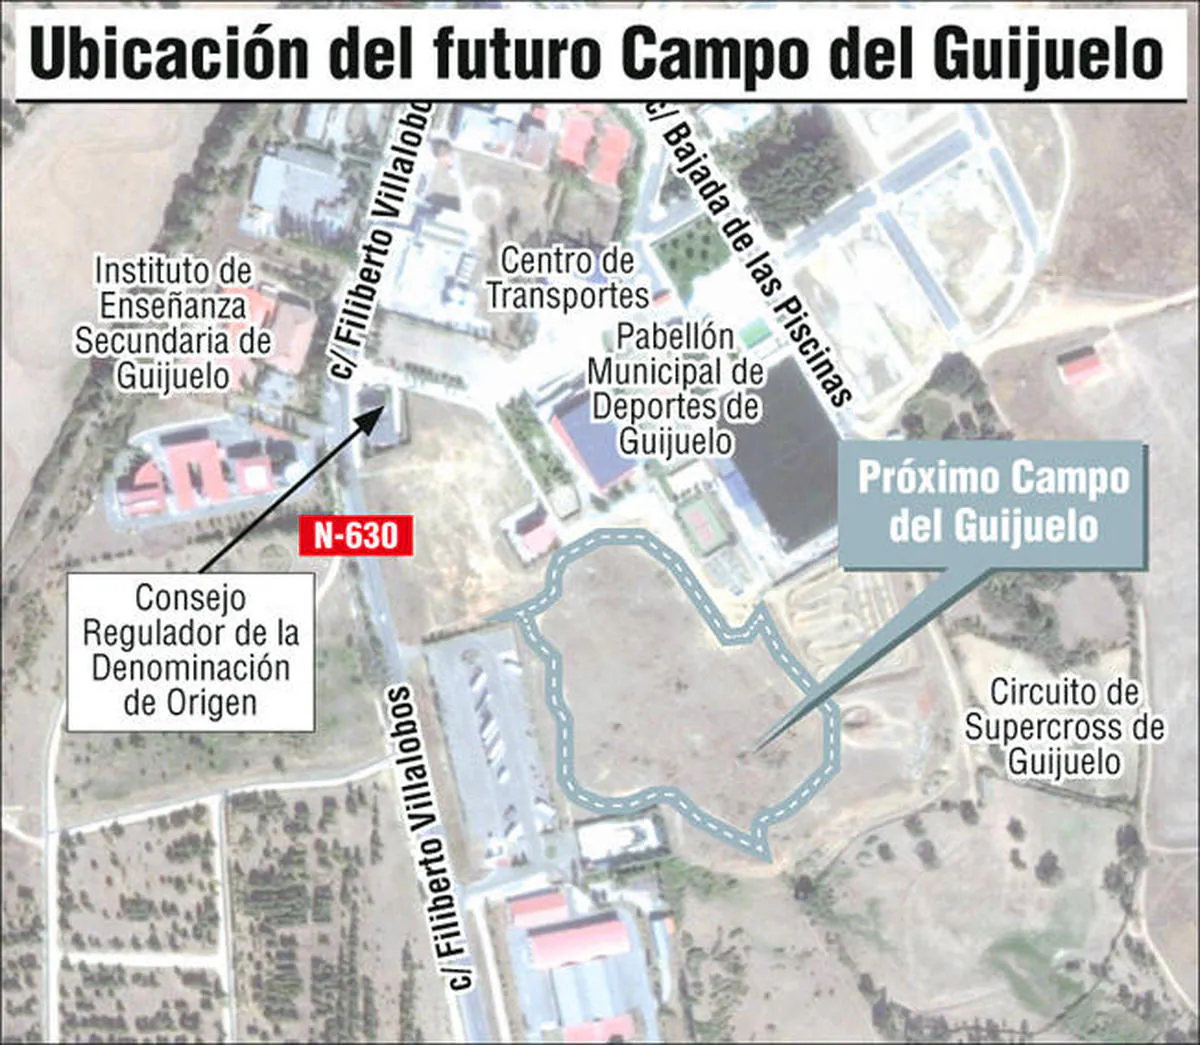 El futuro estadio del Guijuelo tendrá césped natural y pista de atletismo